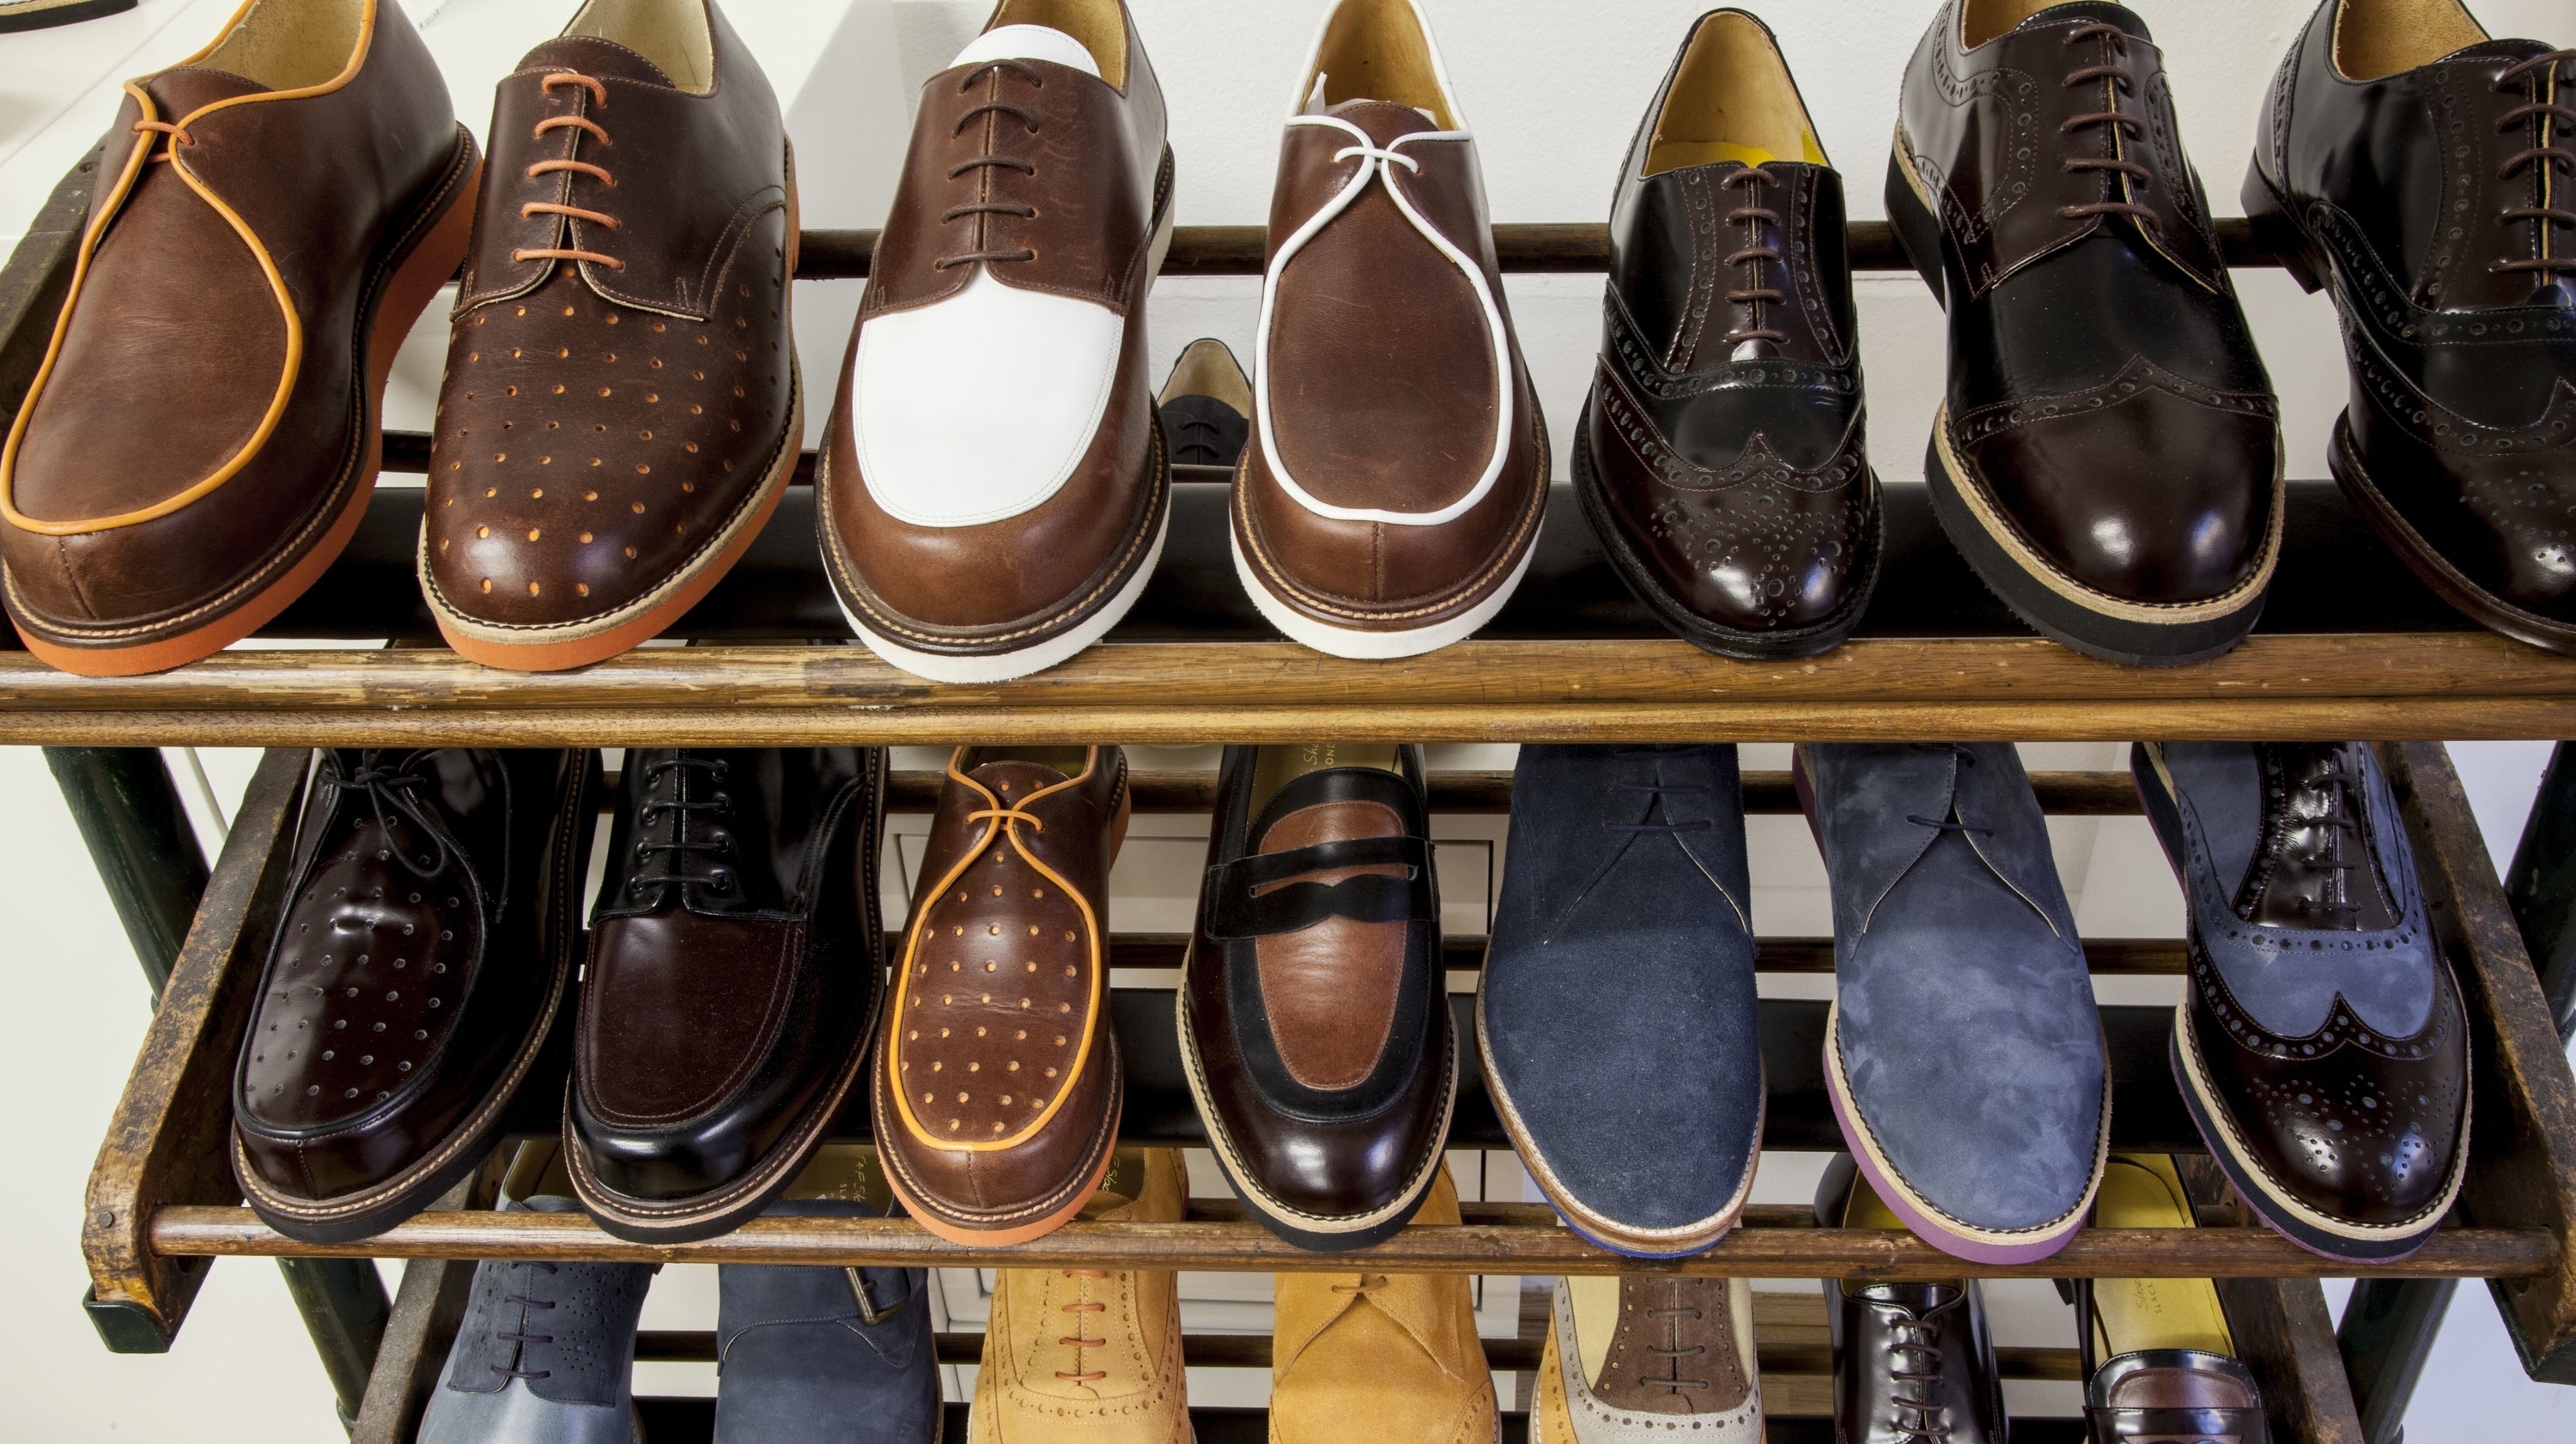 Фирма бренд обувь. Английские ботинки. Британские бренды обуви. Бразильская обувь бренды. Стильная обувь в Англии.